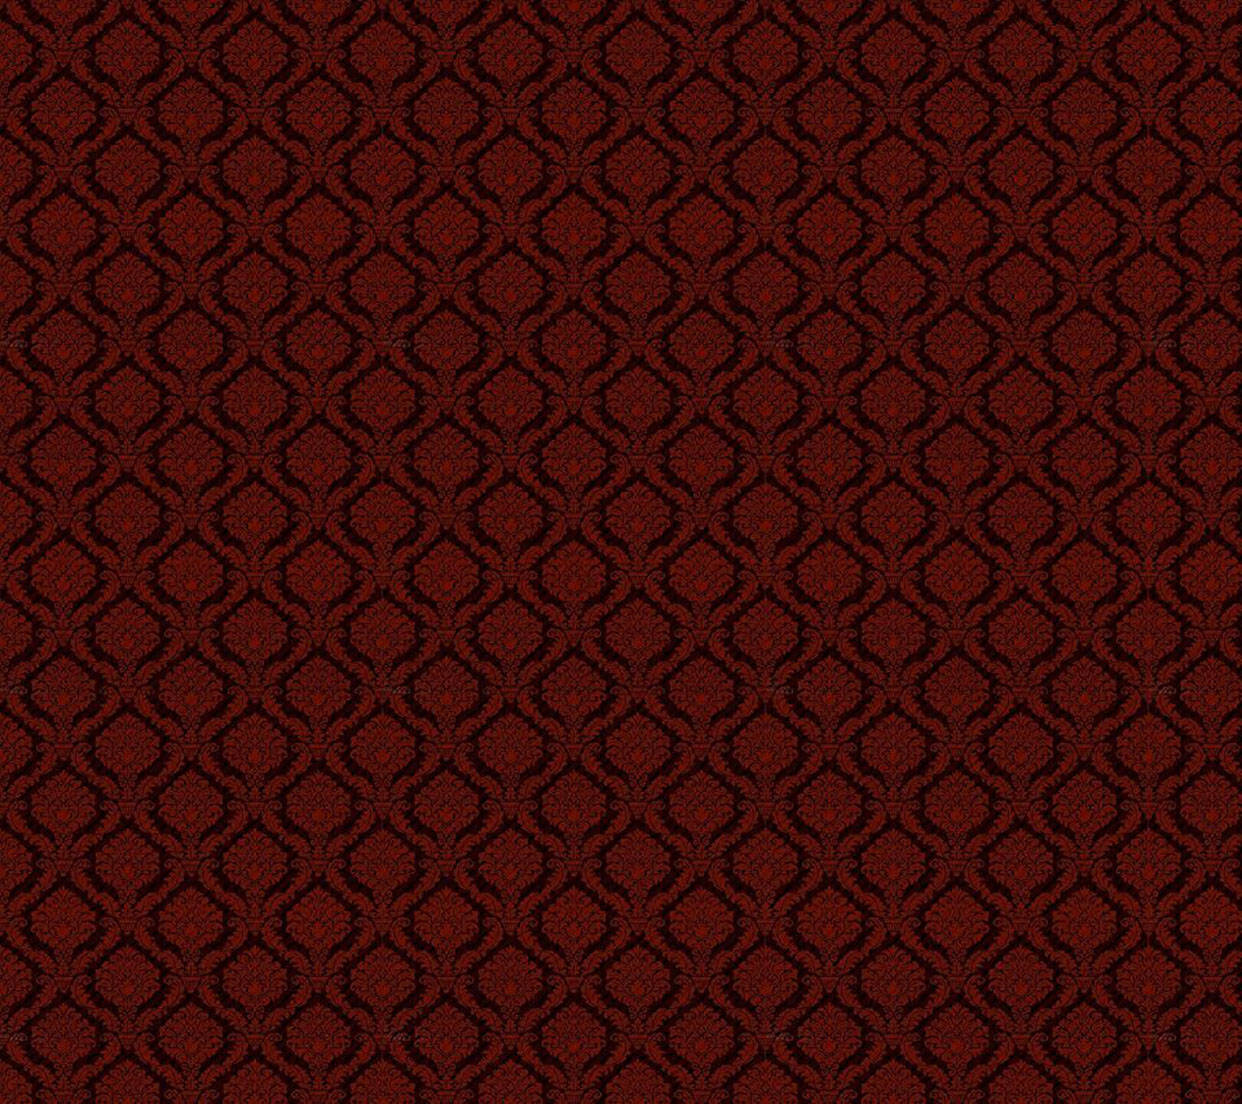 Patrónvintage De Gucci En Color Rojo Oscuro Fondo de pantalla